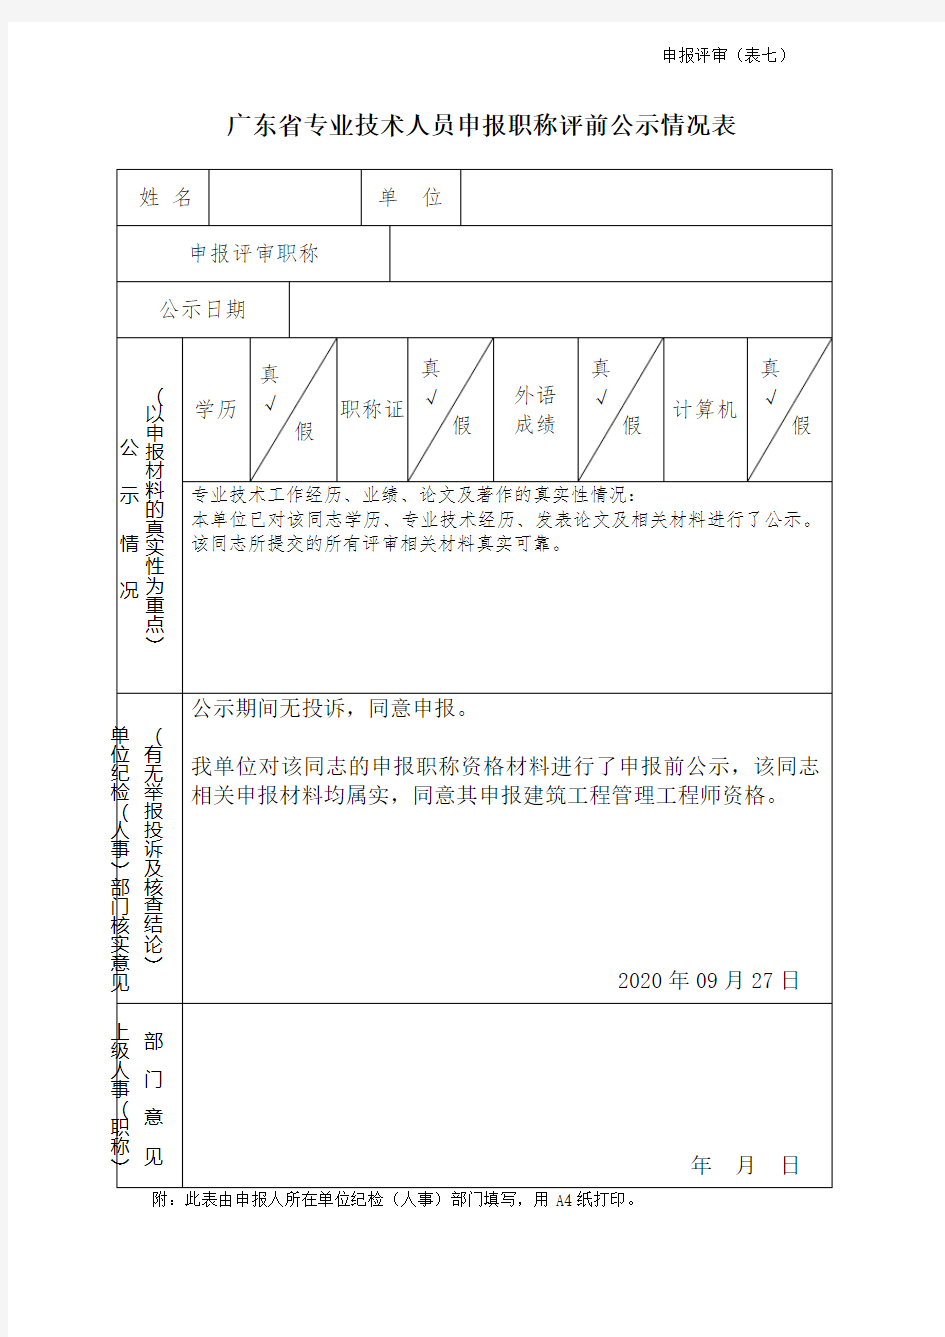 广东省专业技术人员申报职称评前公示情况表